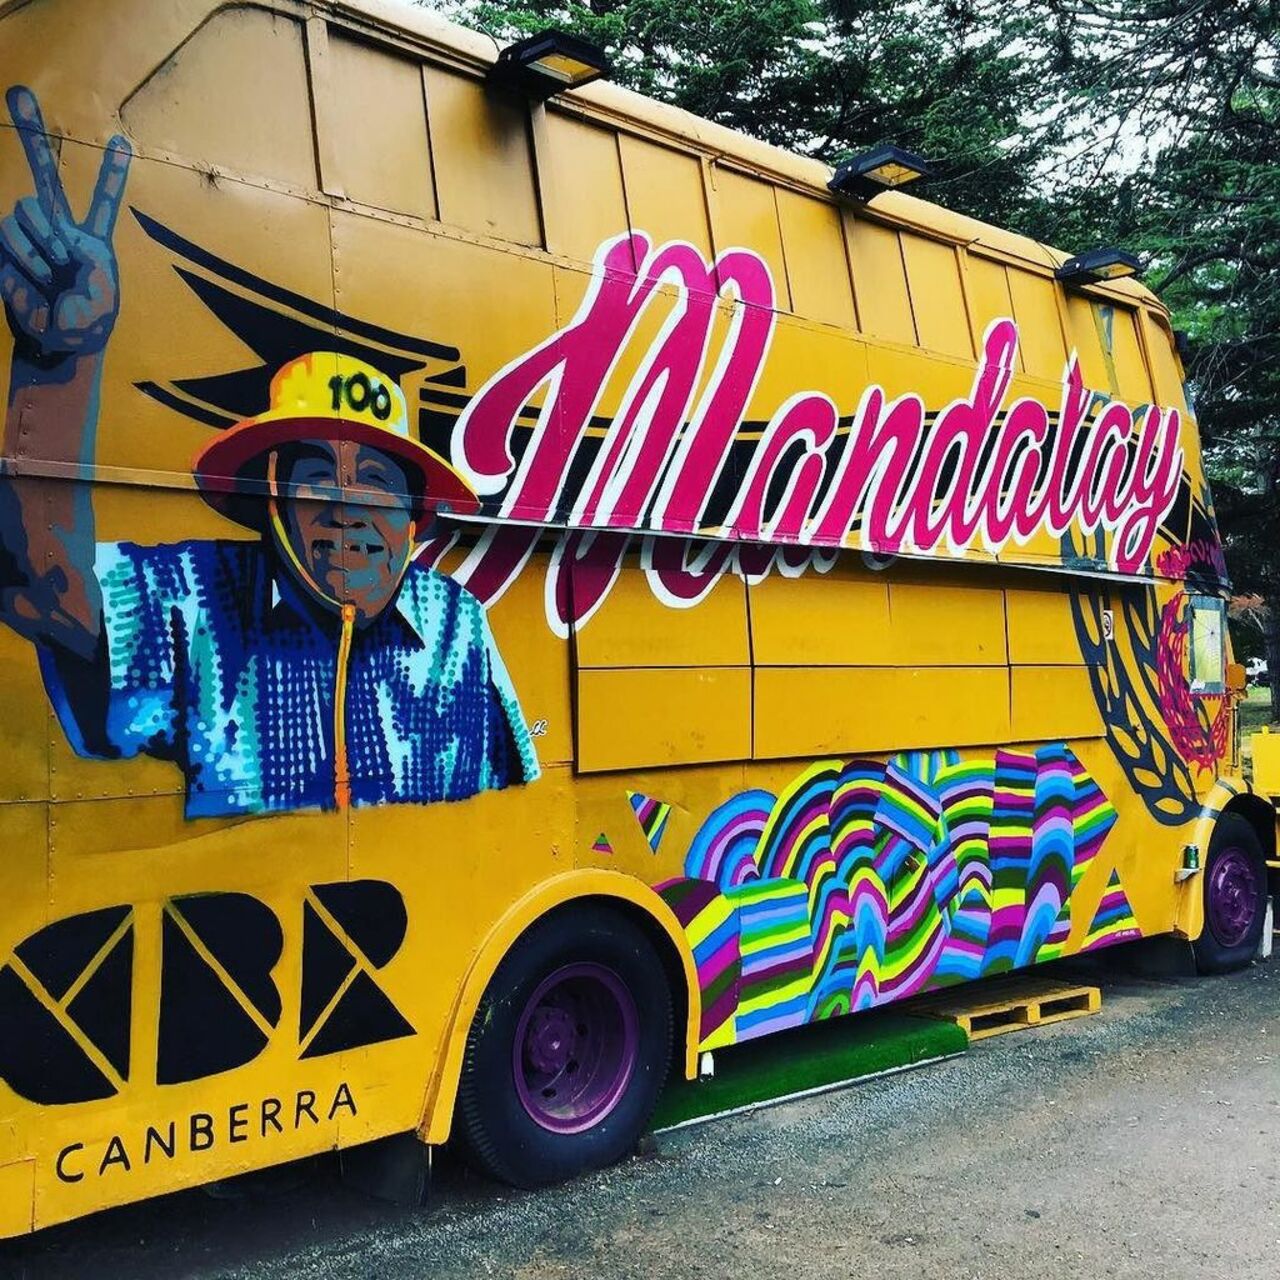 The Mandalay Bus. Best street eats around! #streetart #graffiti #art #CBR #Canberra #publi… http://ift.tt/1NT5GHe https://t.co/IR6YOHh0tV